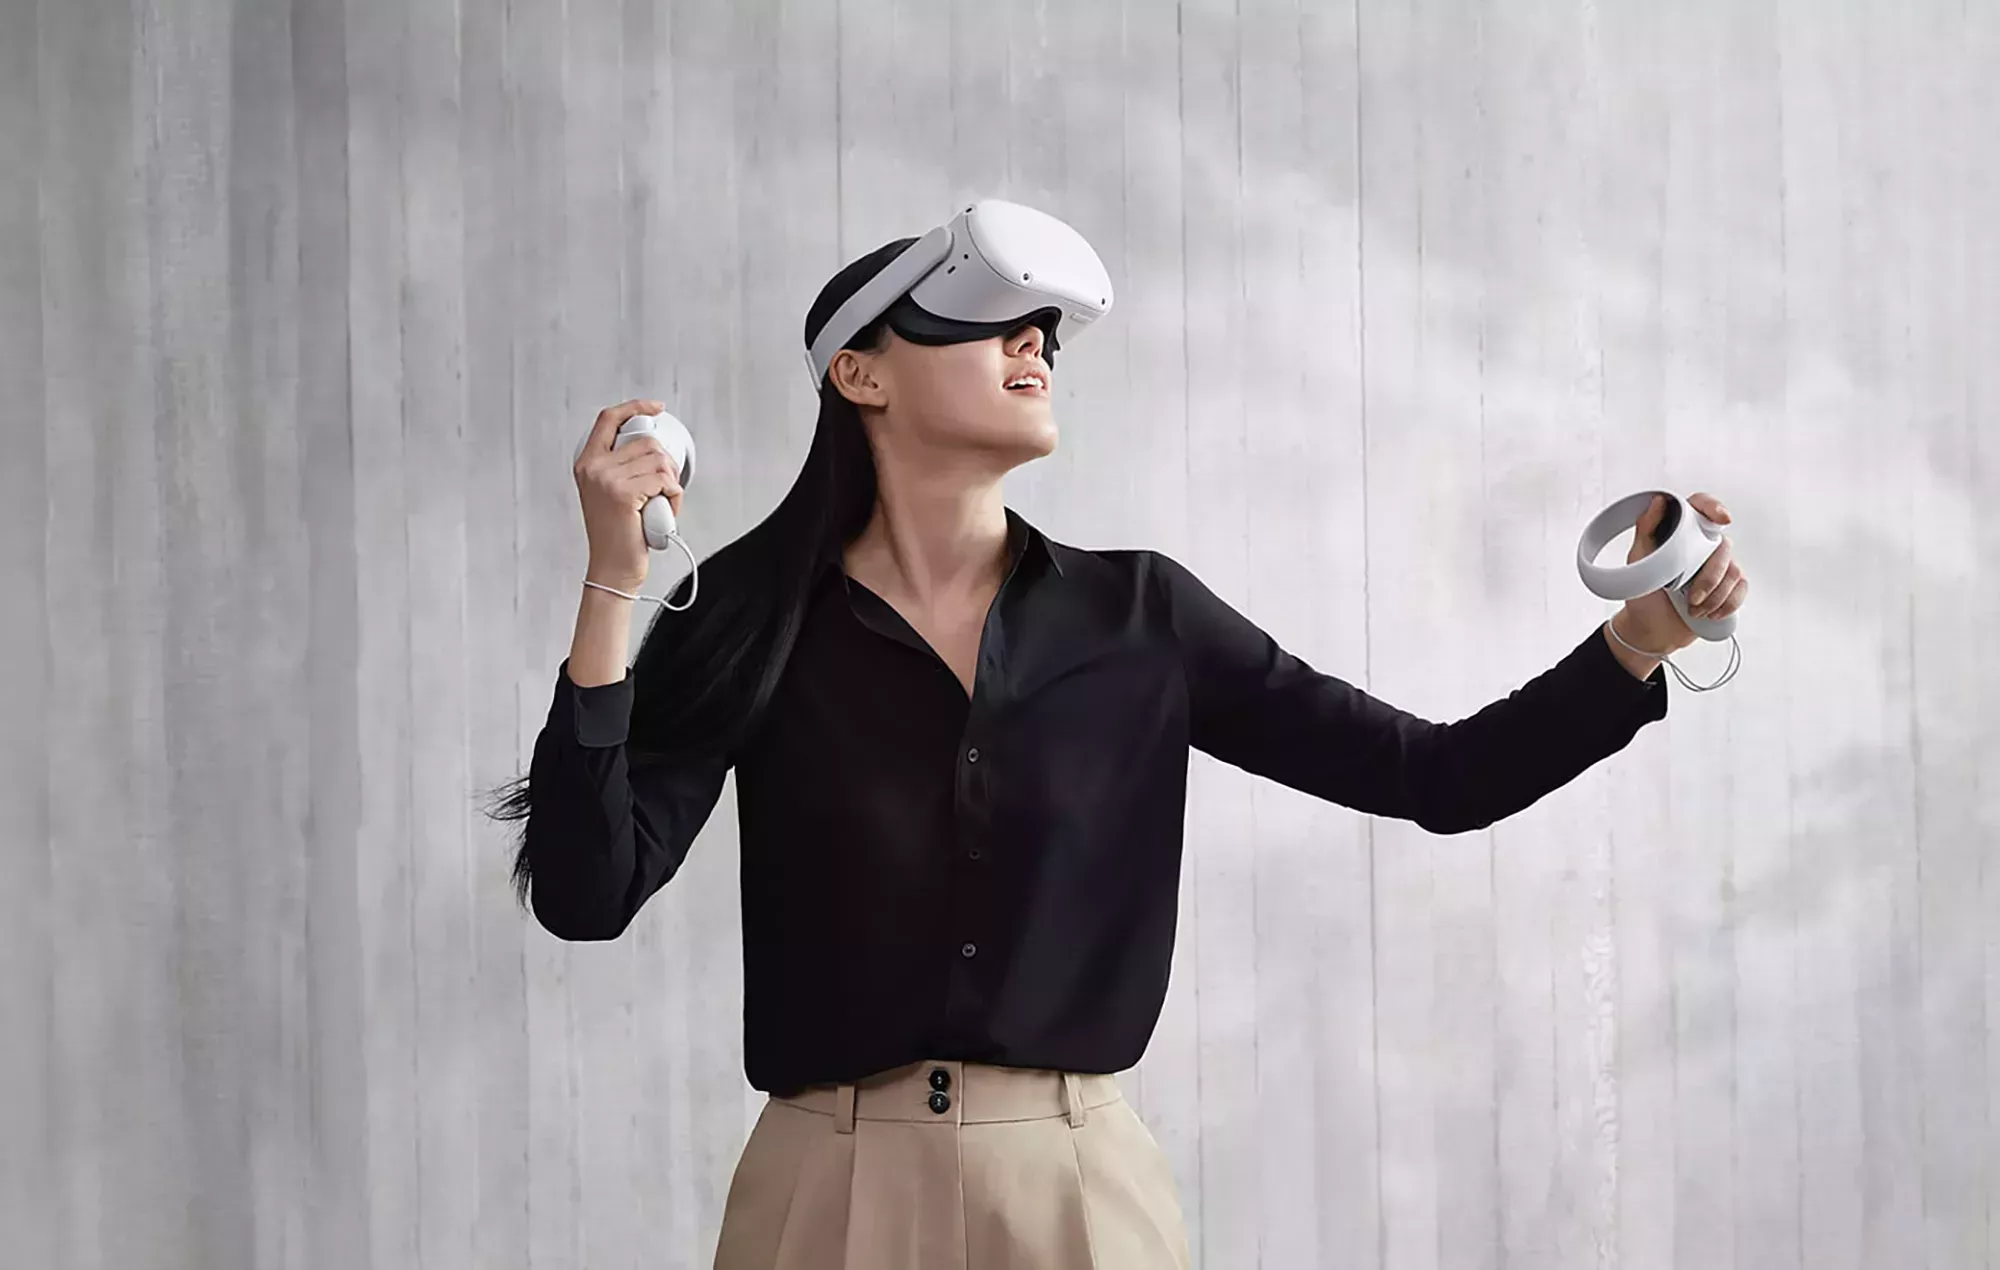 Meta dejará de dar soporte al casco Quest VR original